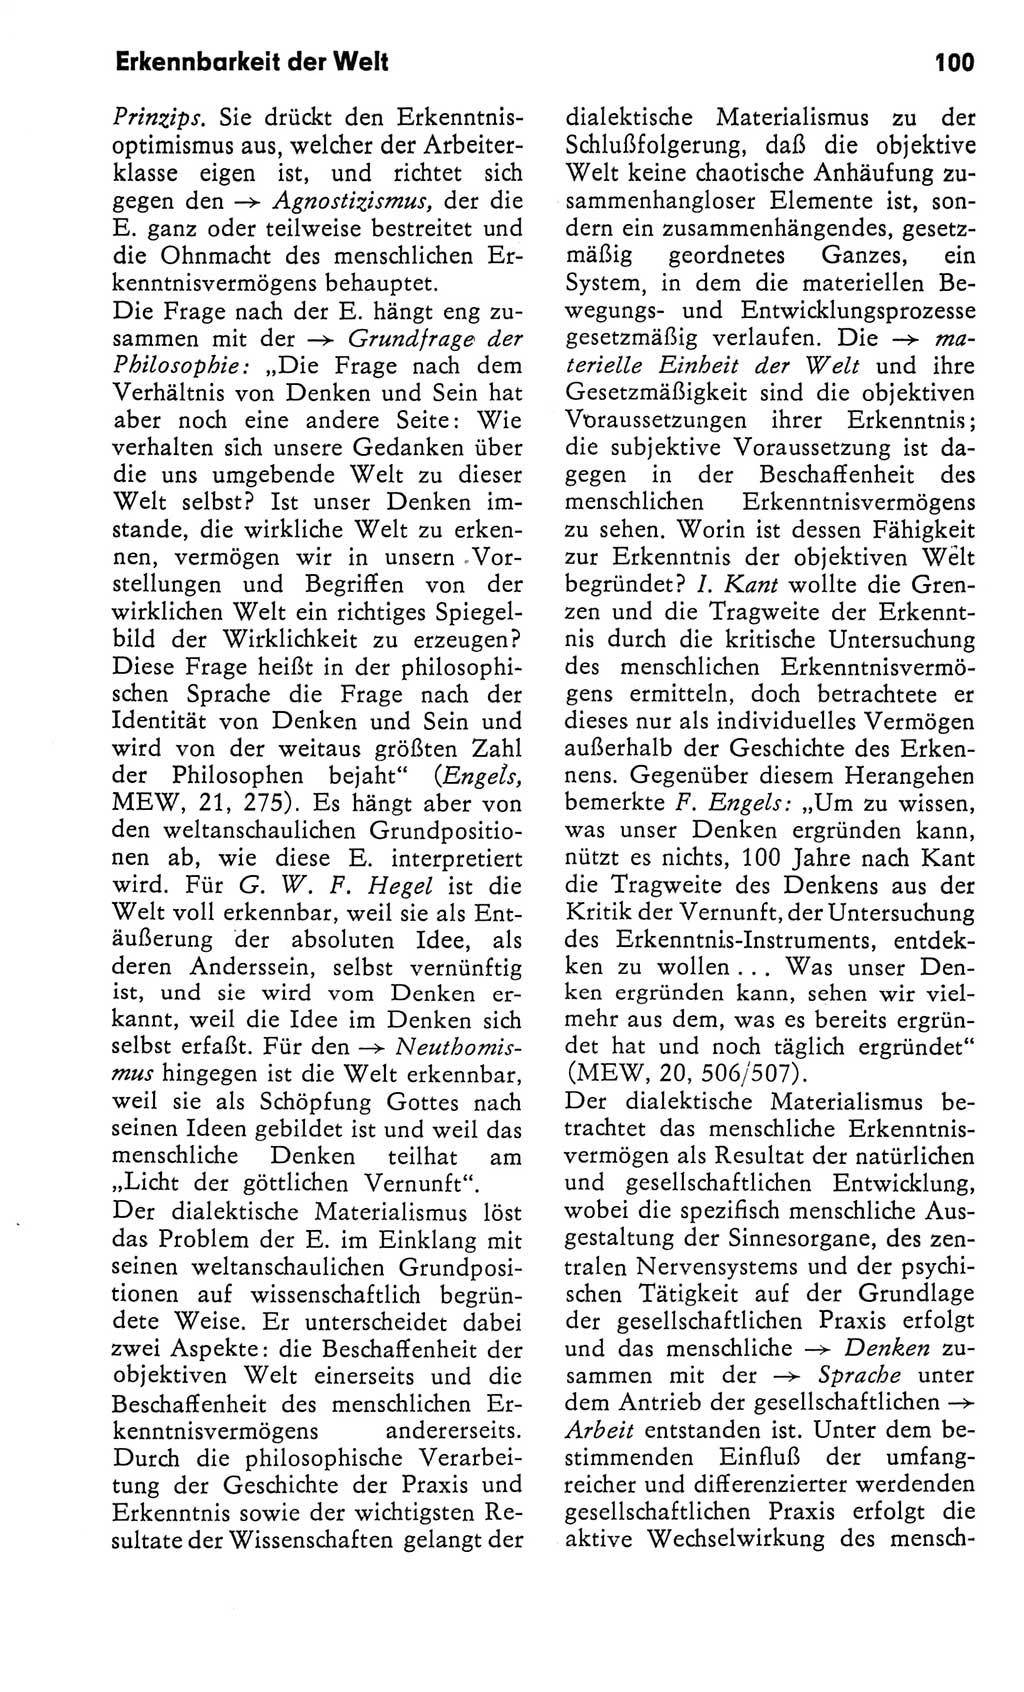 Kleines Wörterbuch der marxistisch-leninistischen Philosophie [Deutsche Demokratische Republik (DDR)] 1982, Seite 100 (Kl. Wb. ML Phil. DDR 1982, S. 100)